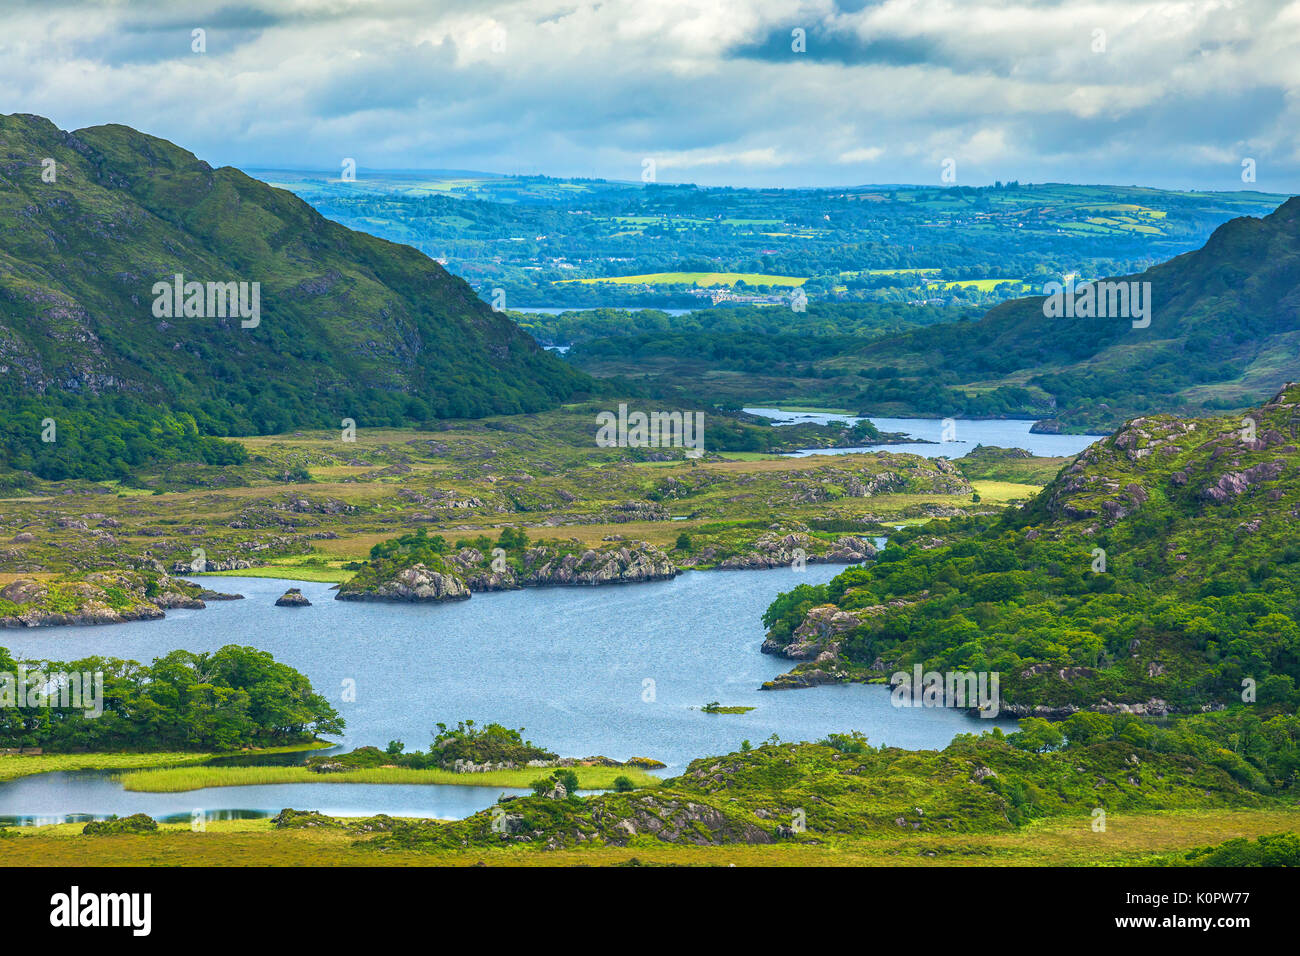 Meine Damen Ansicht ist eine malerische entlang der N71 Teil des Ring of Kerry übersehen, im Nationalpark Killarney, Irland. Der Name stammt offenbar aus der a Stockfoto